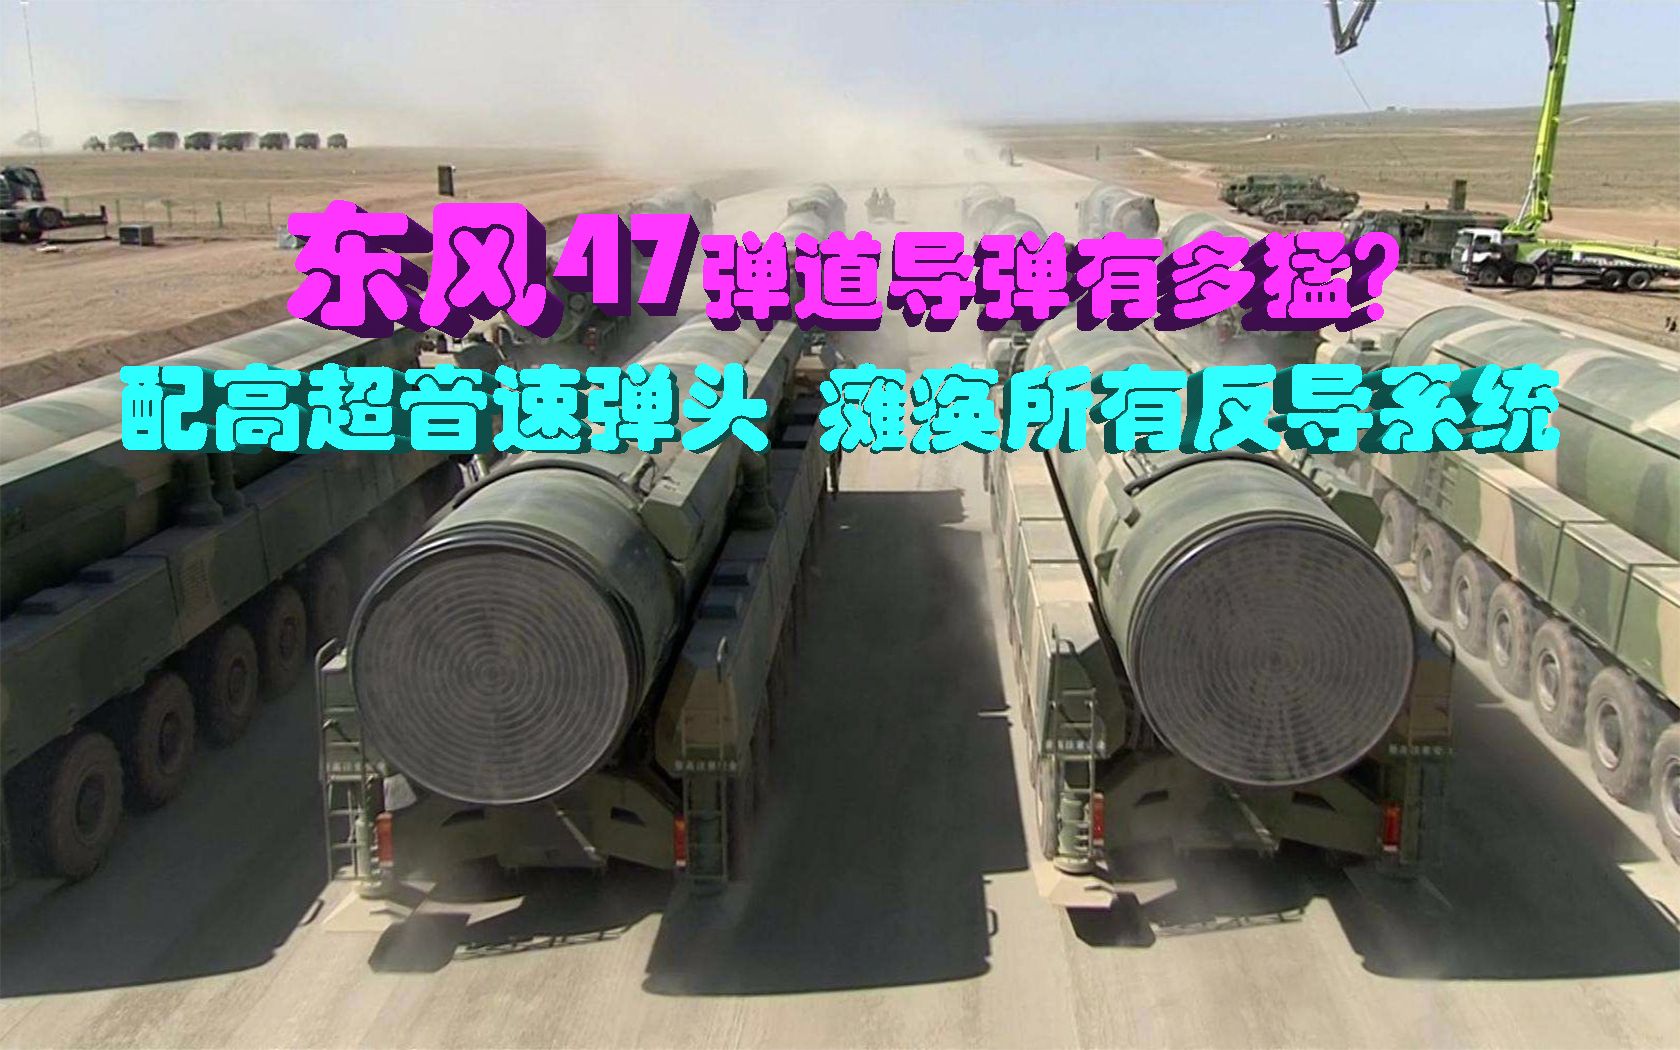 东风47弹道导弹有多猛配高超音速弹头将瘫痪所有反导系统